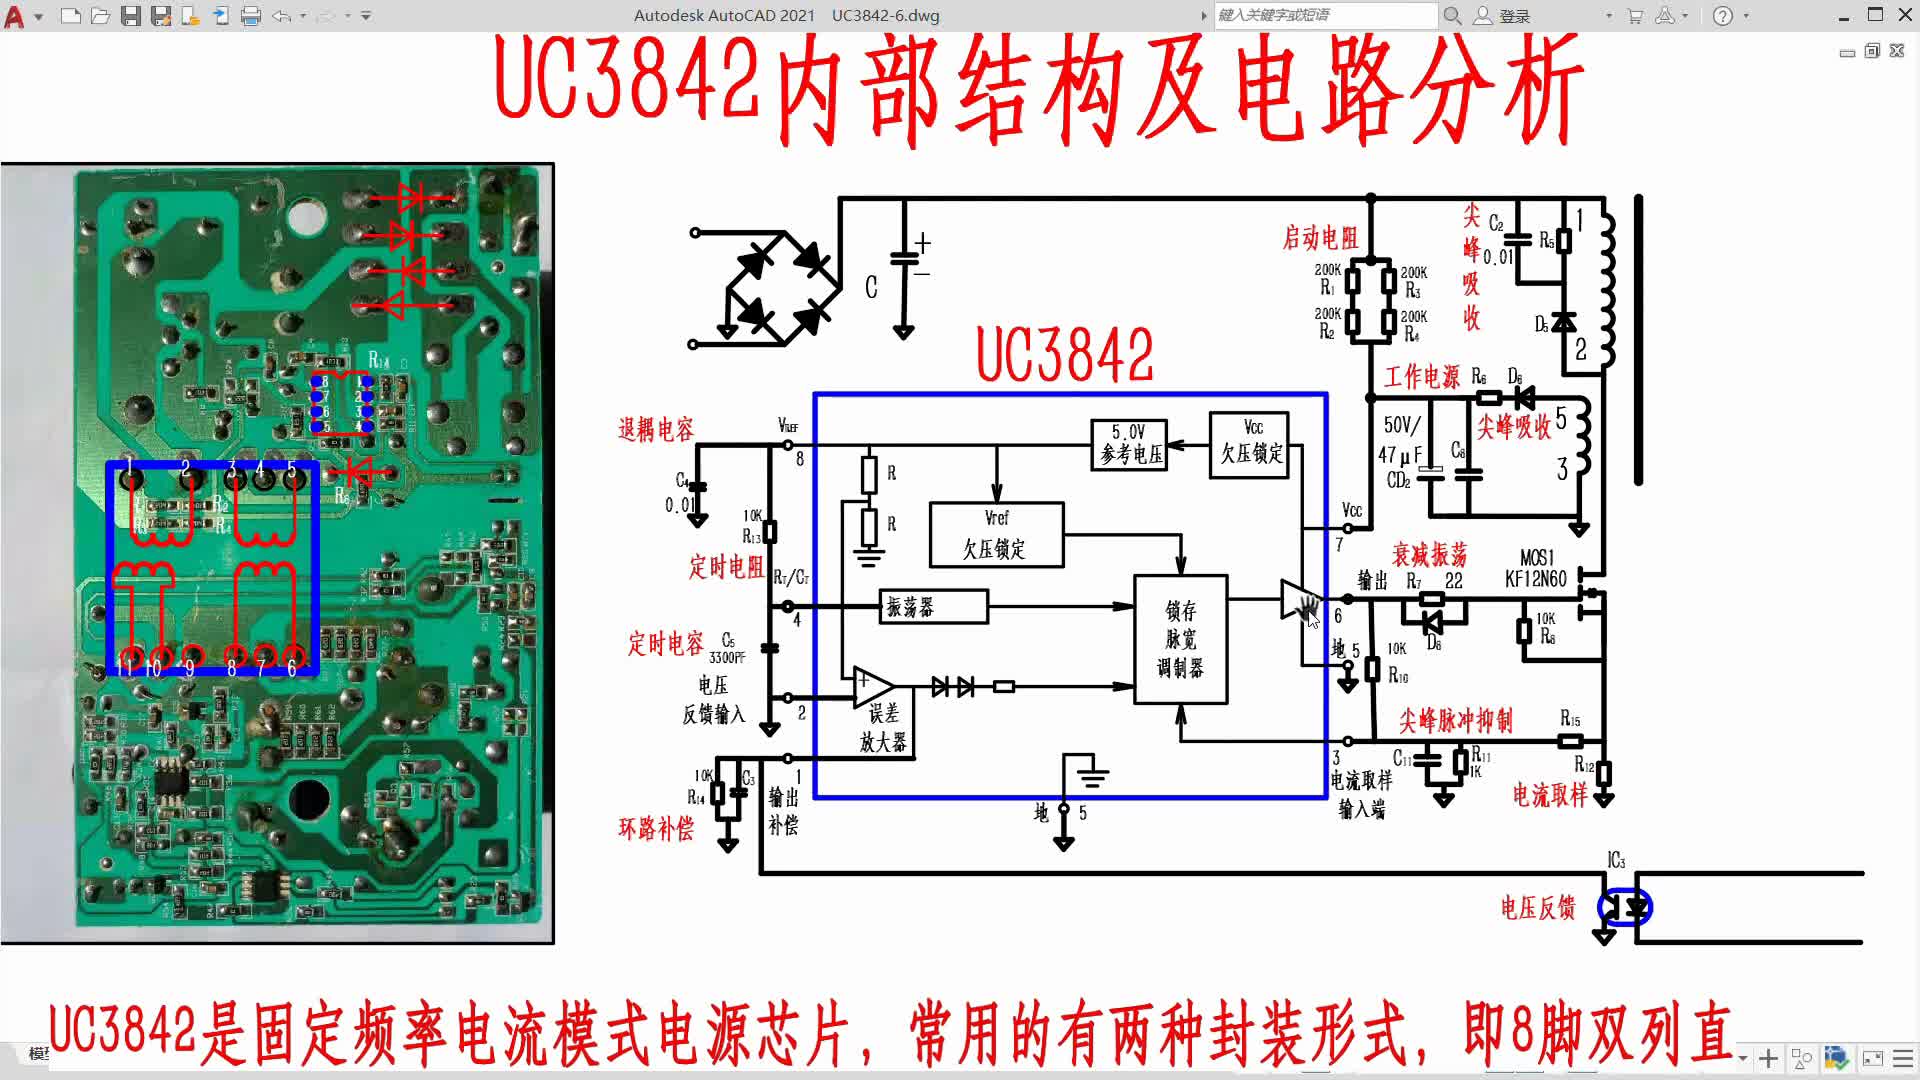 UC3842内部功能及外部电路分析#电路设计 